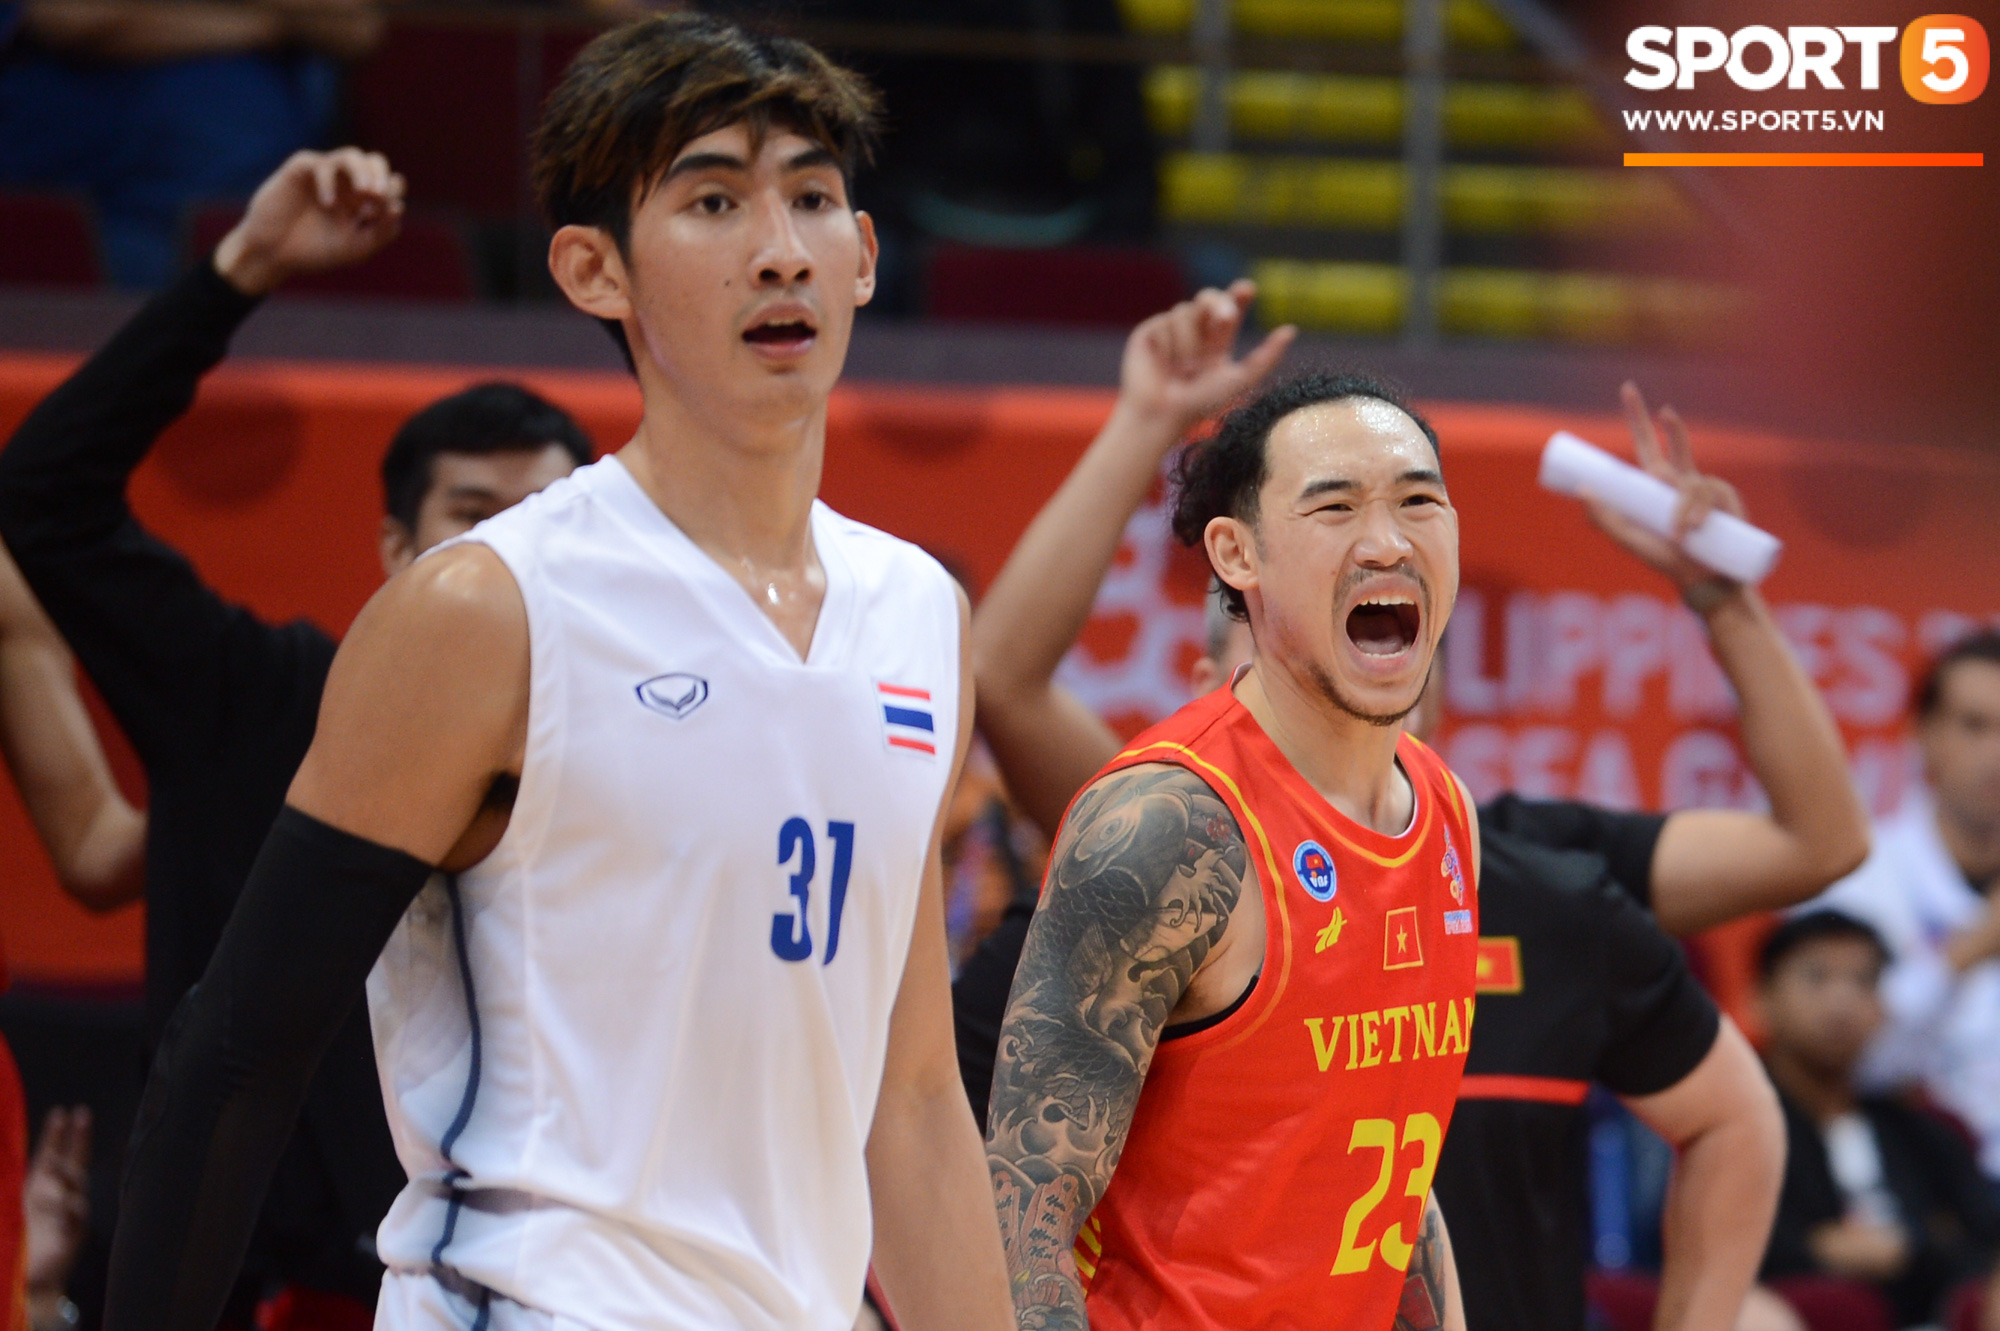 Tan giấc mộng vàng ở SEA Games 30, tuyển bóng rổ Việt Nam hướng tới tấm huy chương đồng thứ 2 - Ảnh 3.